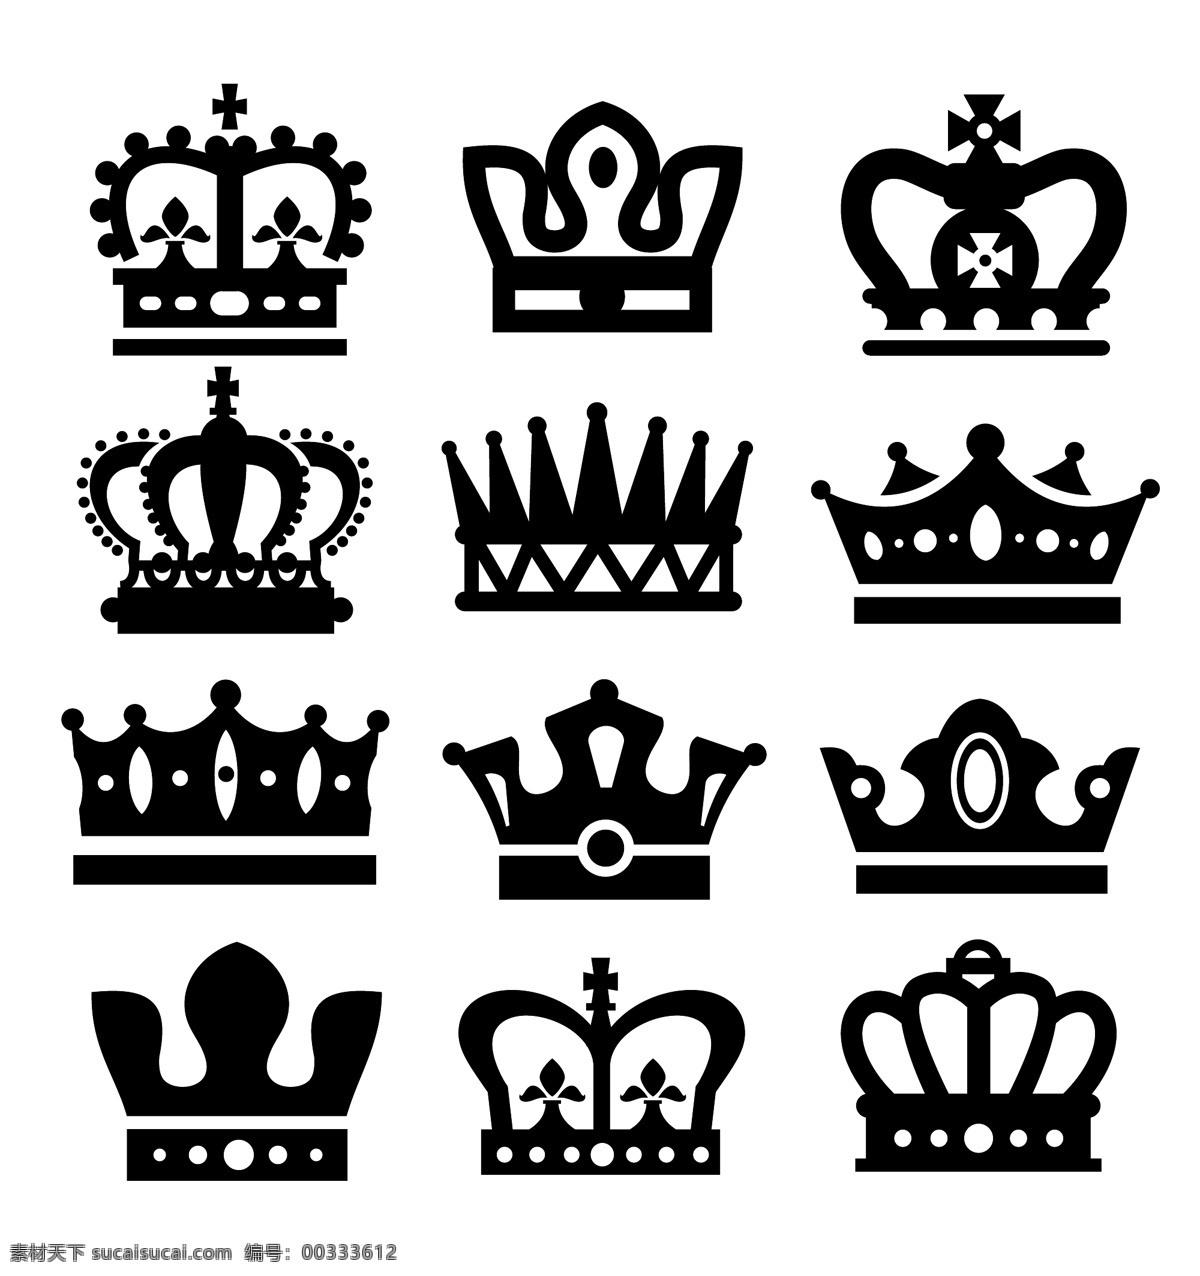 皇冠 欧式皇冠 头盔 权力 王冠 皇家 皇族 矢量 标志图标 网页小图标 白色